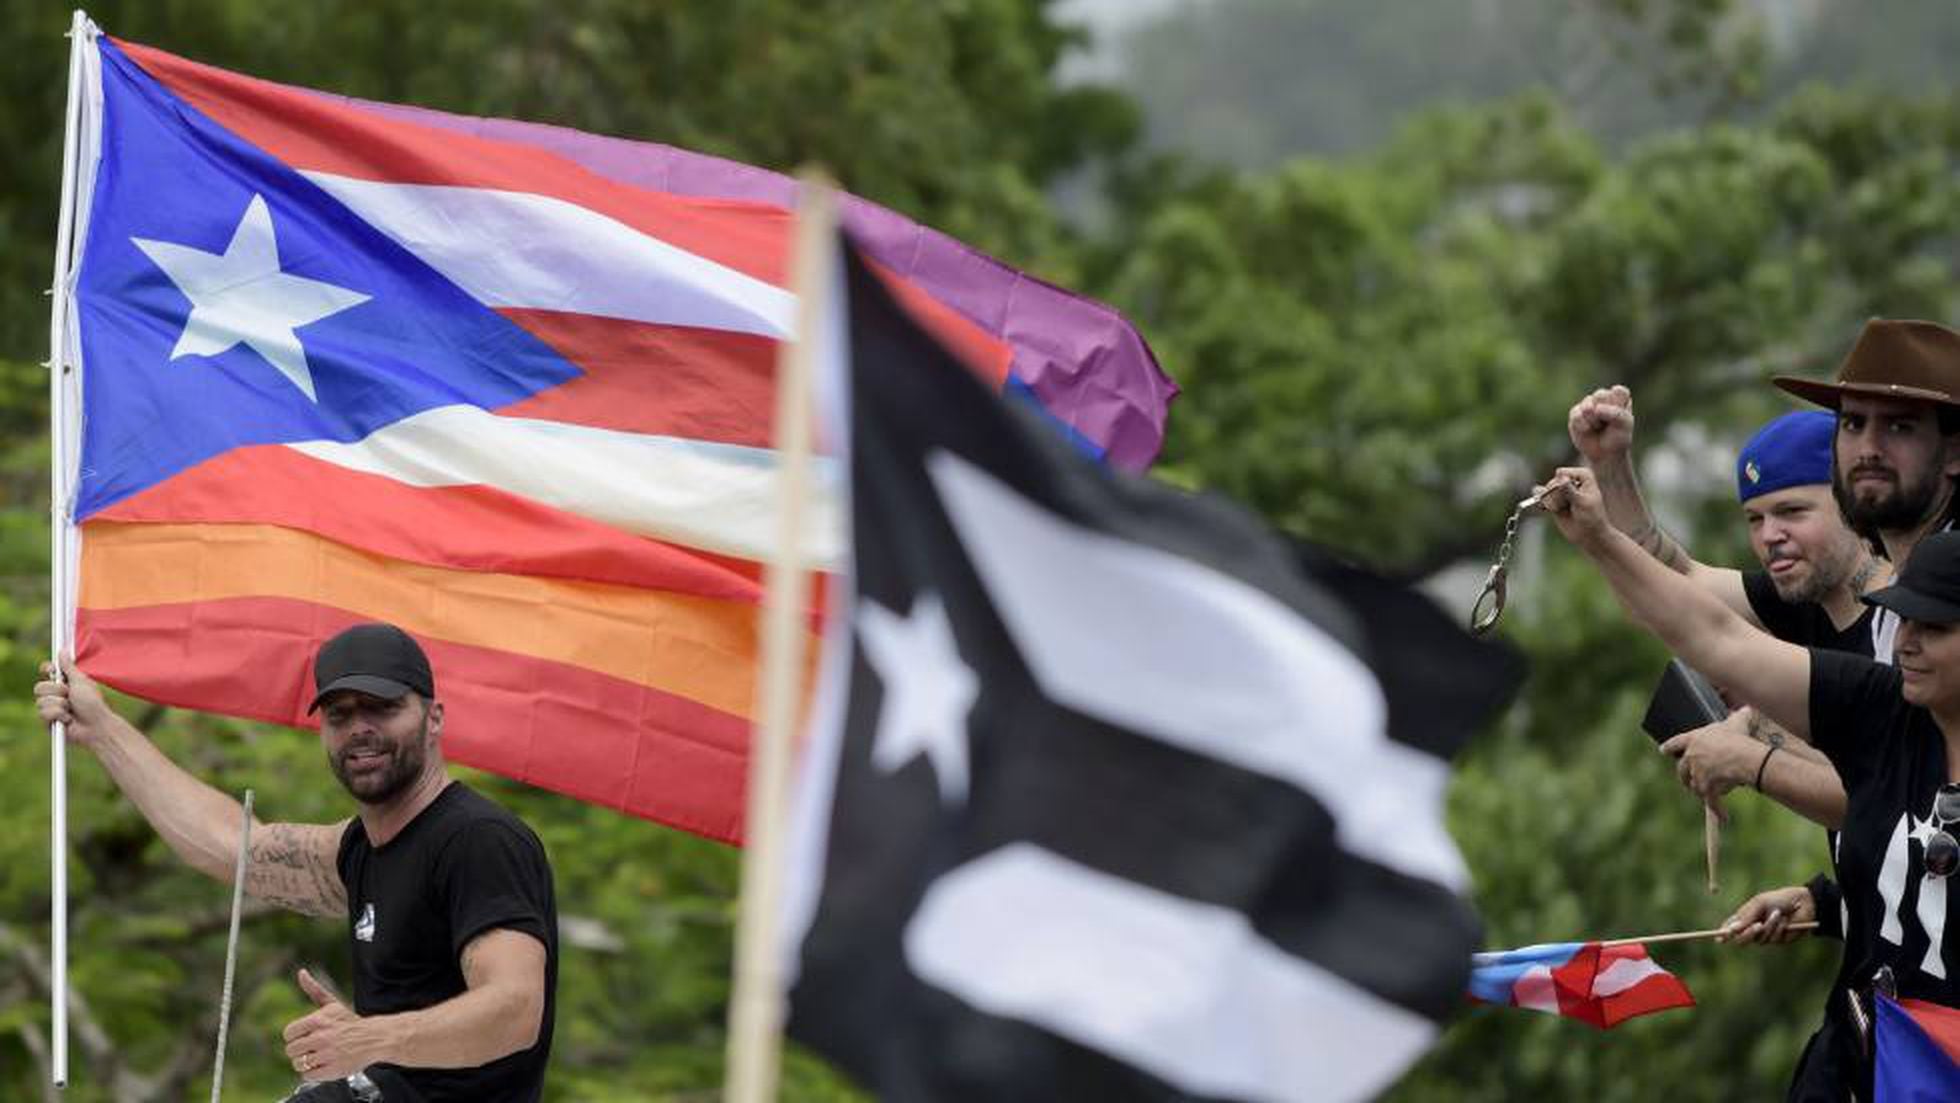 pequeño clérigo Desalentar Revolución en Puerto Rico a ritmo de reguetón | Gente | EL PAÍS